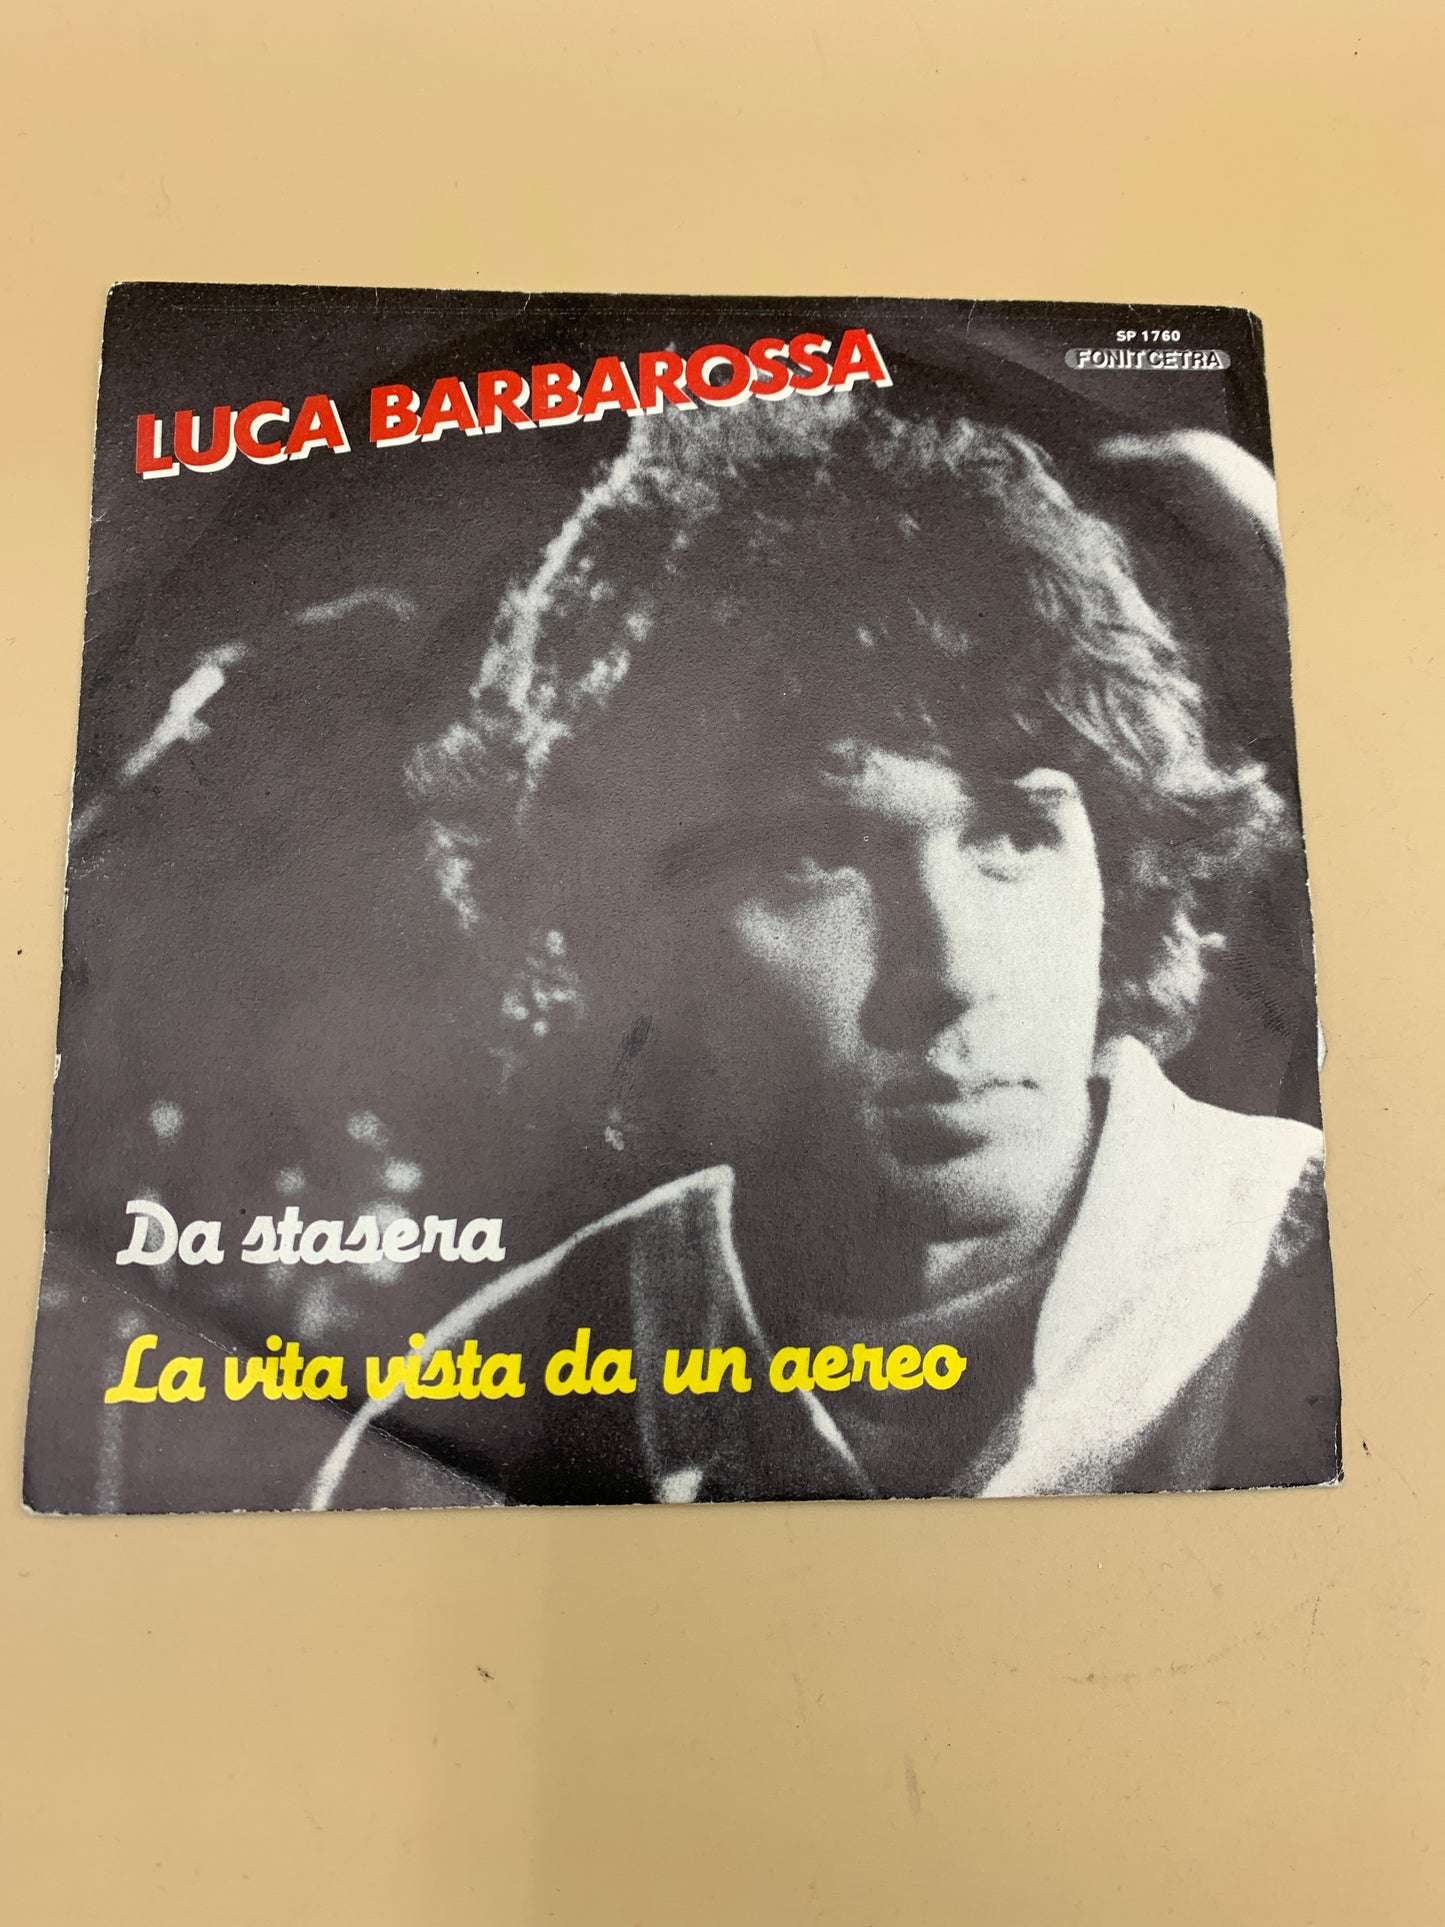 Luca Barbarossa - Da stasera - La vita vista da un aereo - disco vinile 45 giri